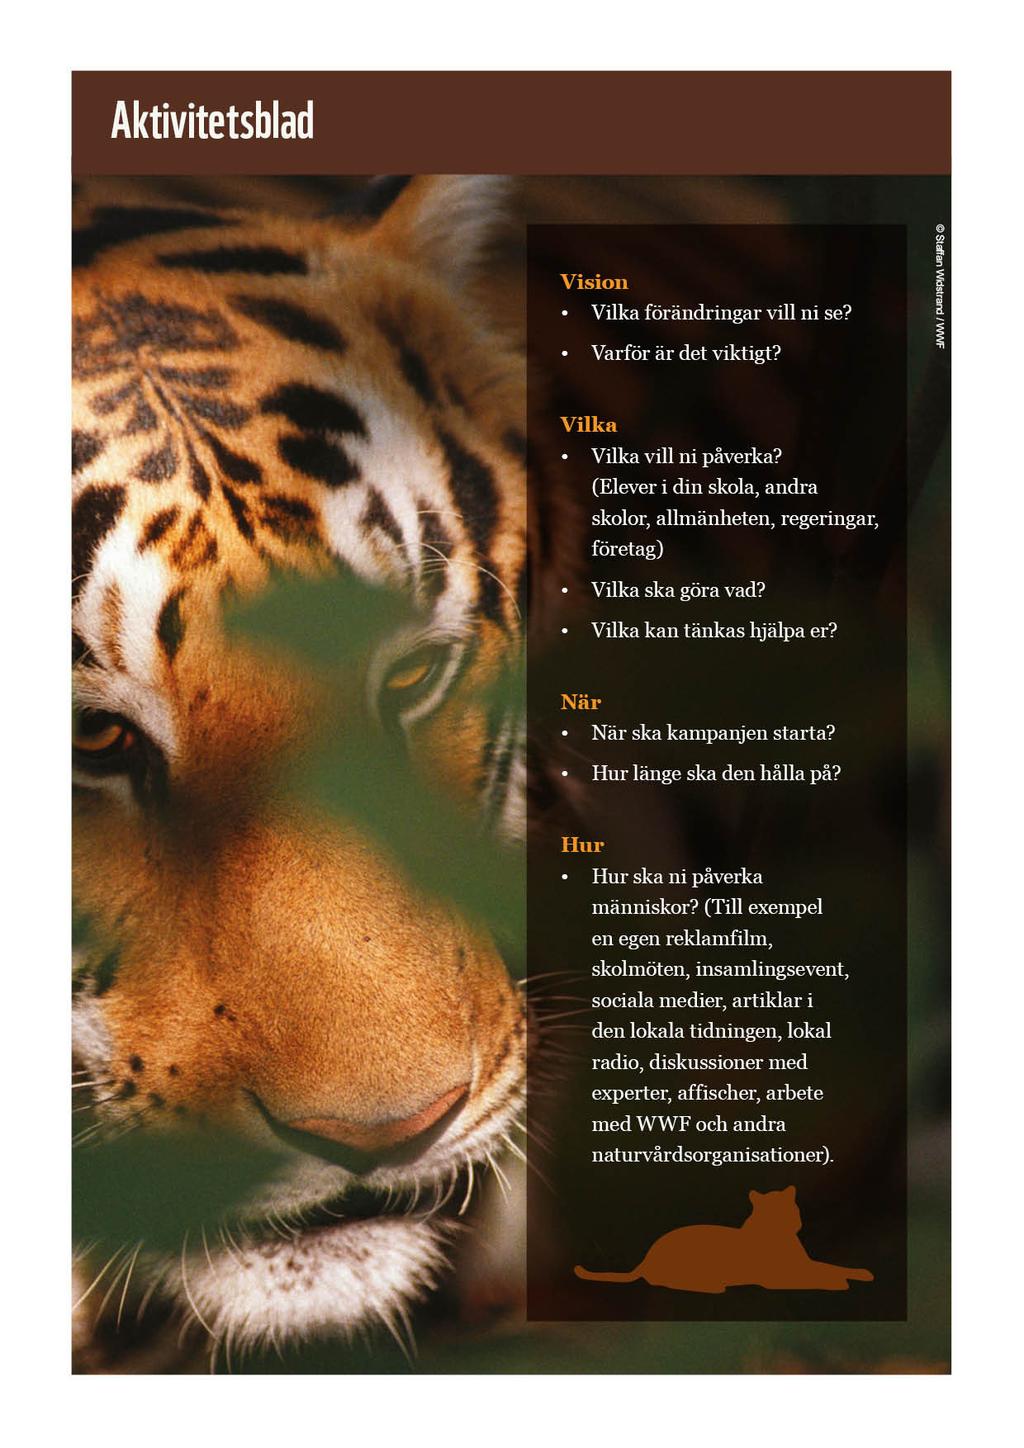 Varför är tigrar i fara, varför borde de bli räddade och vad kan vi göra för att hjälpa dem?